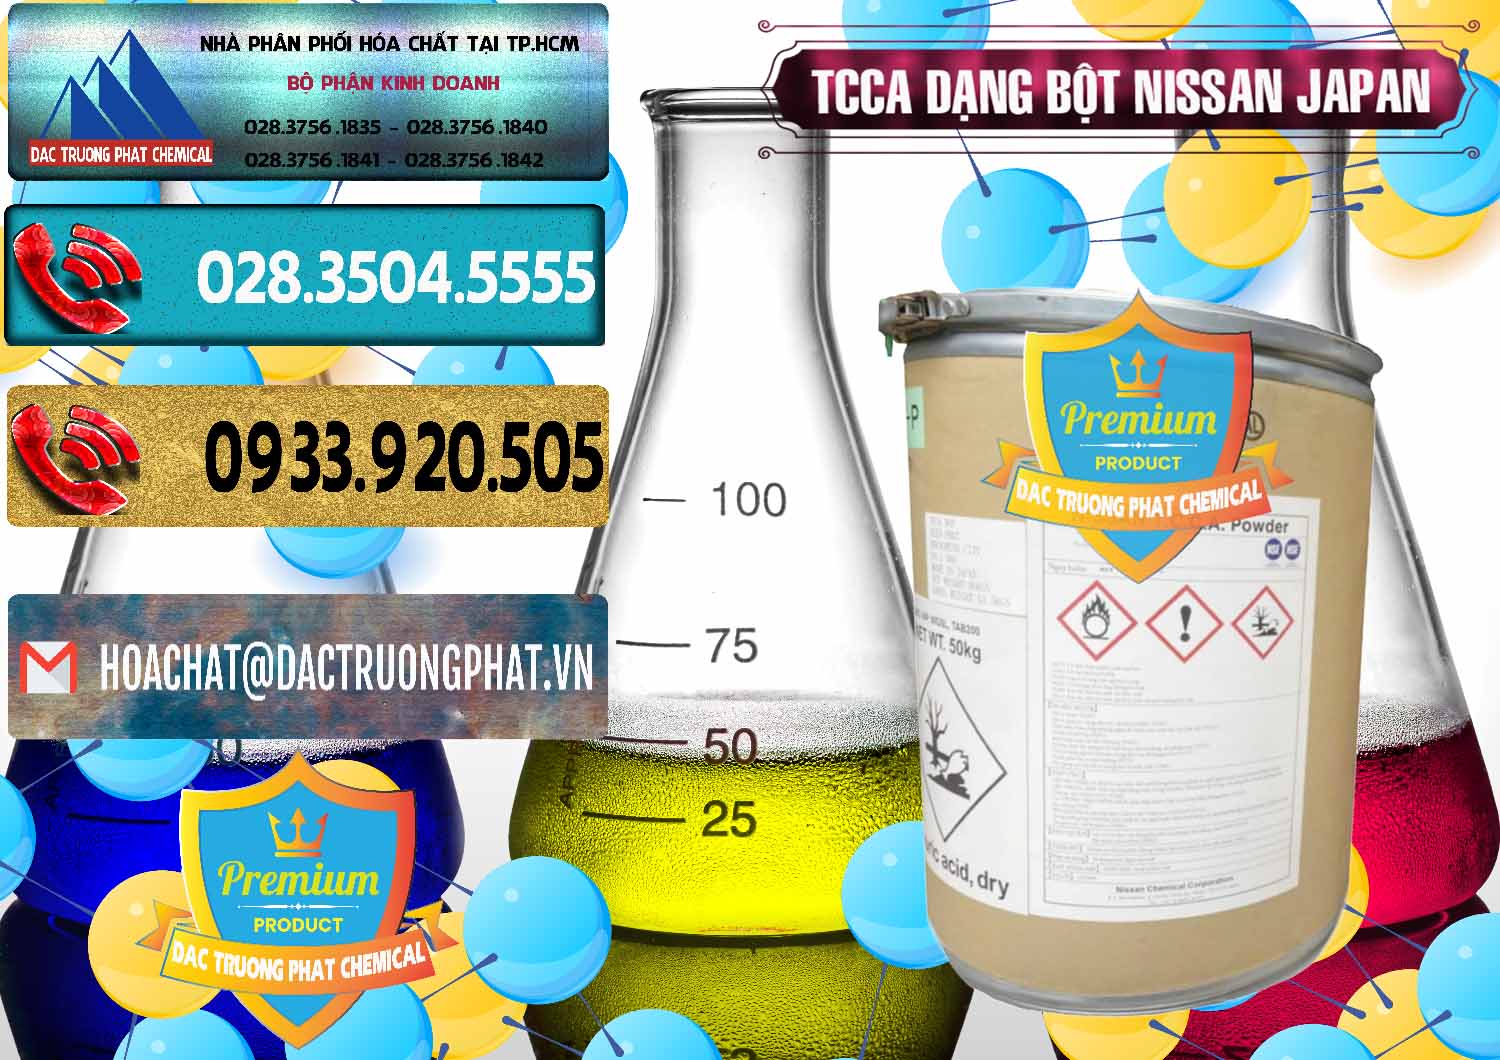 Công ty chuyên bán ( cung cấp ) TCCA - Acid Trichloroisocyanuric 90% Dạng Bột Nissan Nhật Bản Japan - 0375 - Phân phối _ cung cấp hóa chất tại TP.HCM - hoachatdetnhuom.com